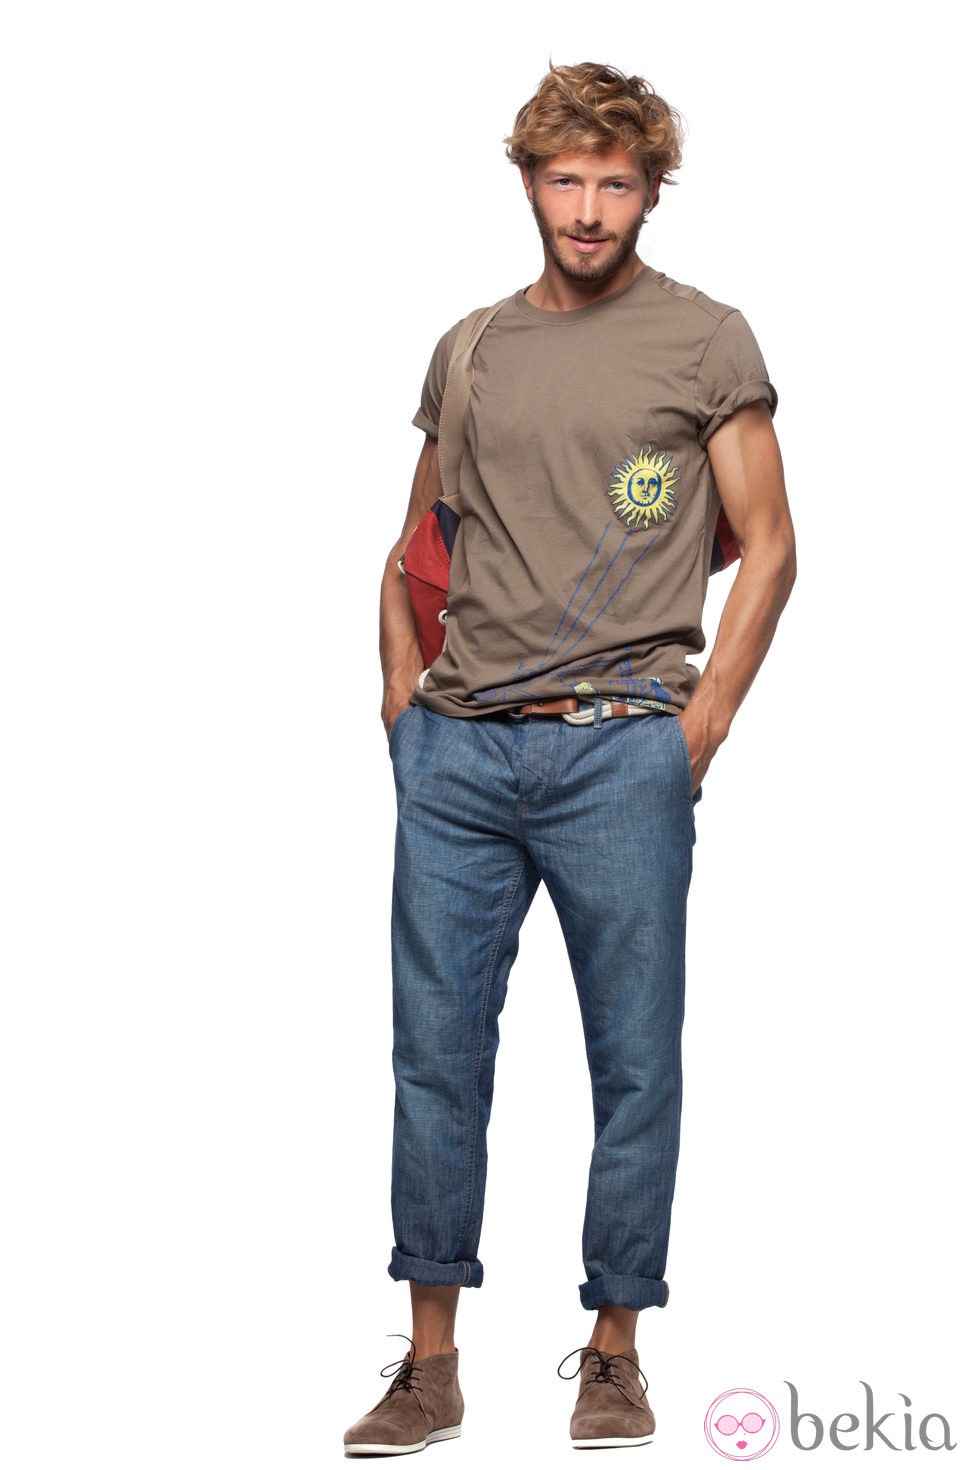 Camiseta beige estampada con pantalón vaquero de la colección verano 2012 de Chevignon